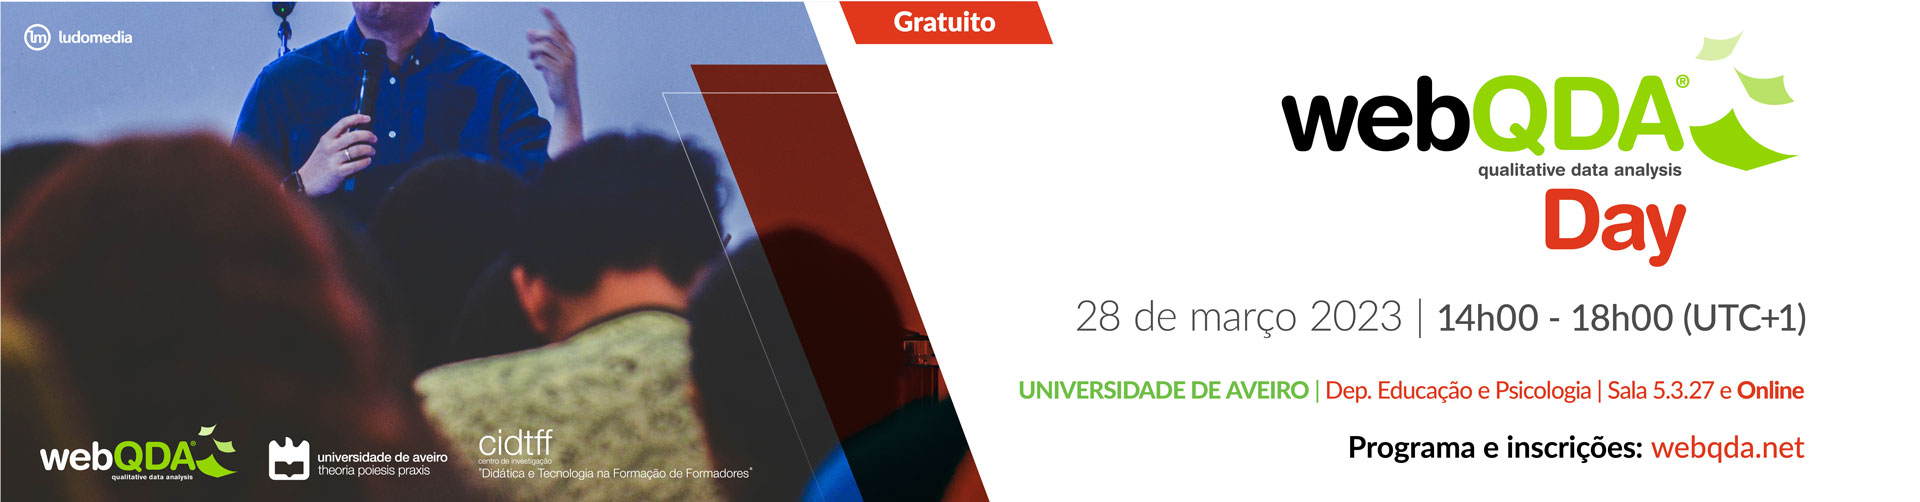 webQDA Day Universidade de Aveiro Março 2023